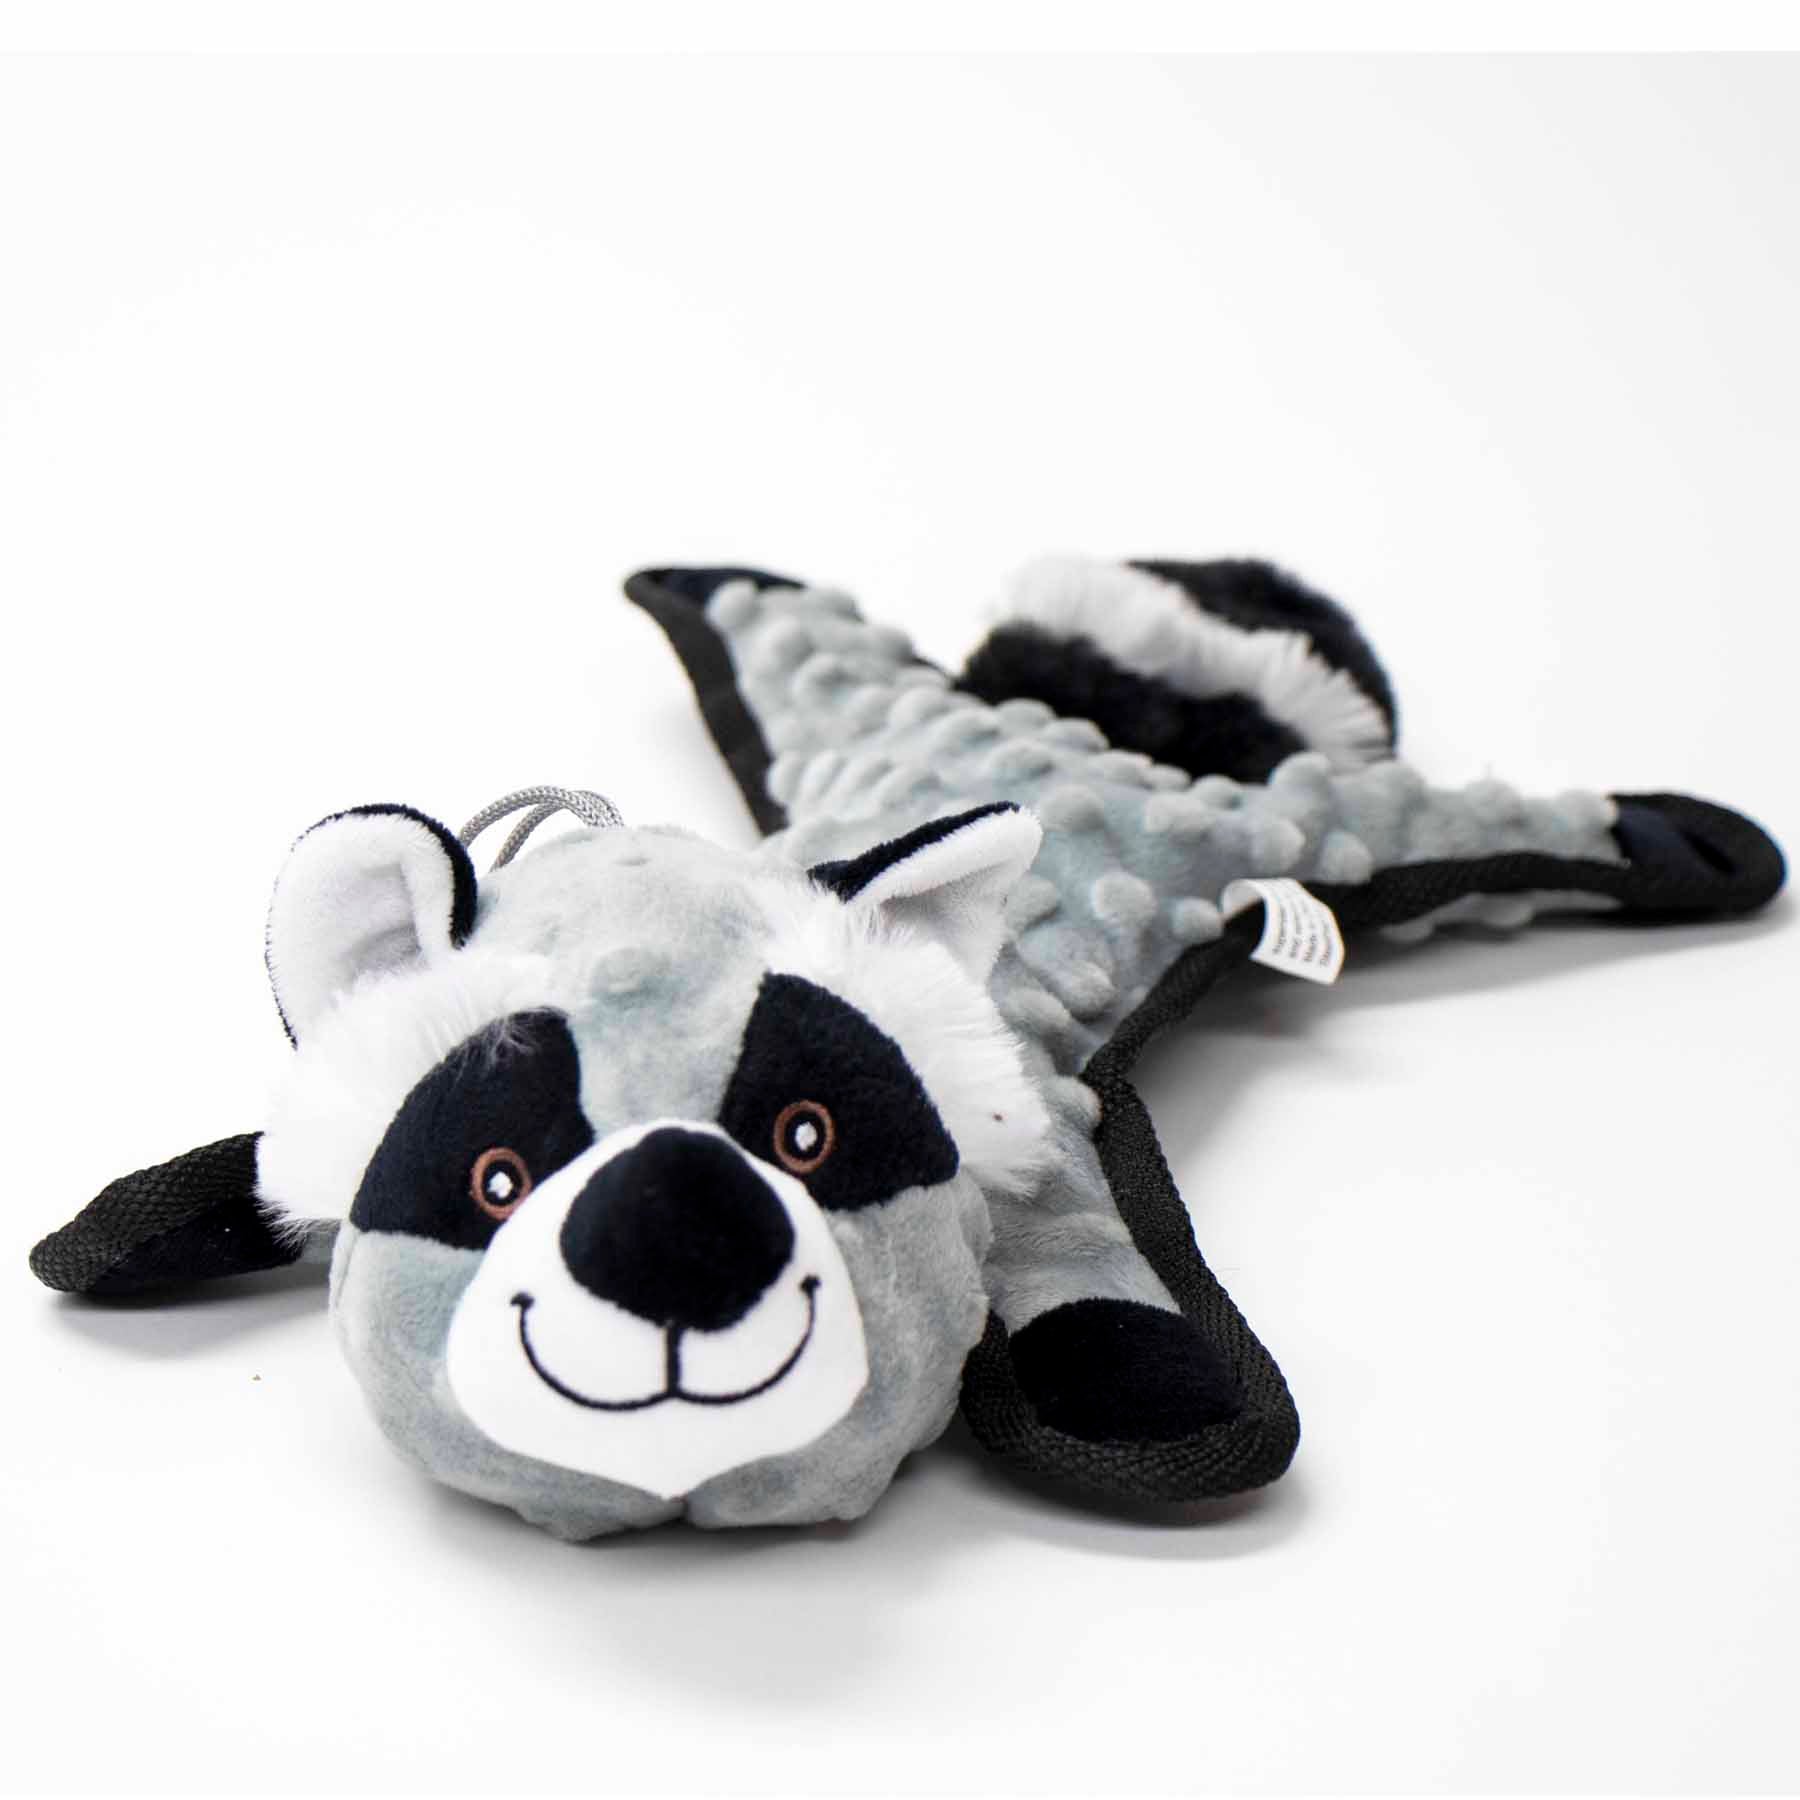 Steel Dog Dog Toy - Bumpy Raccoon